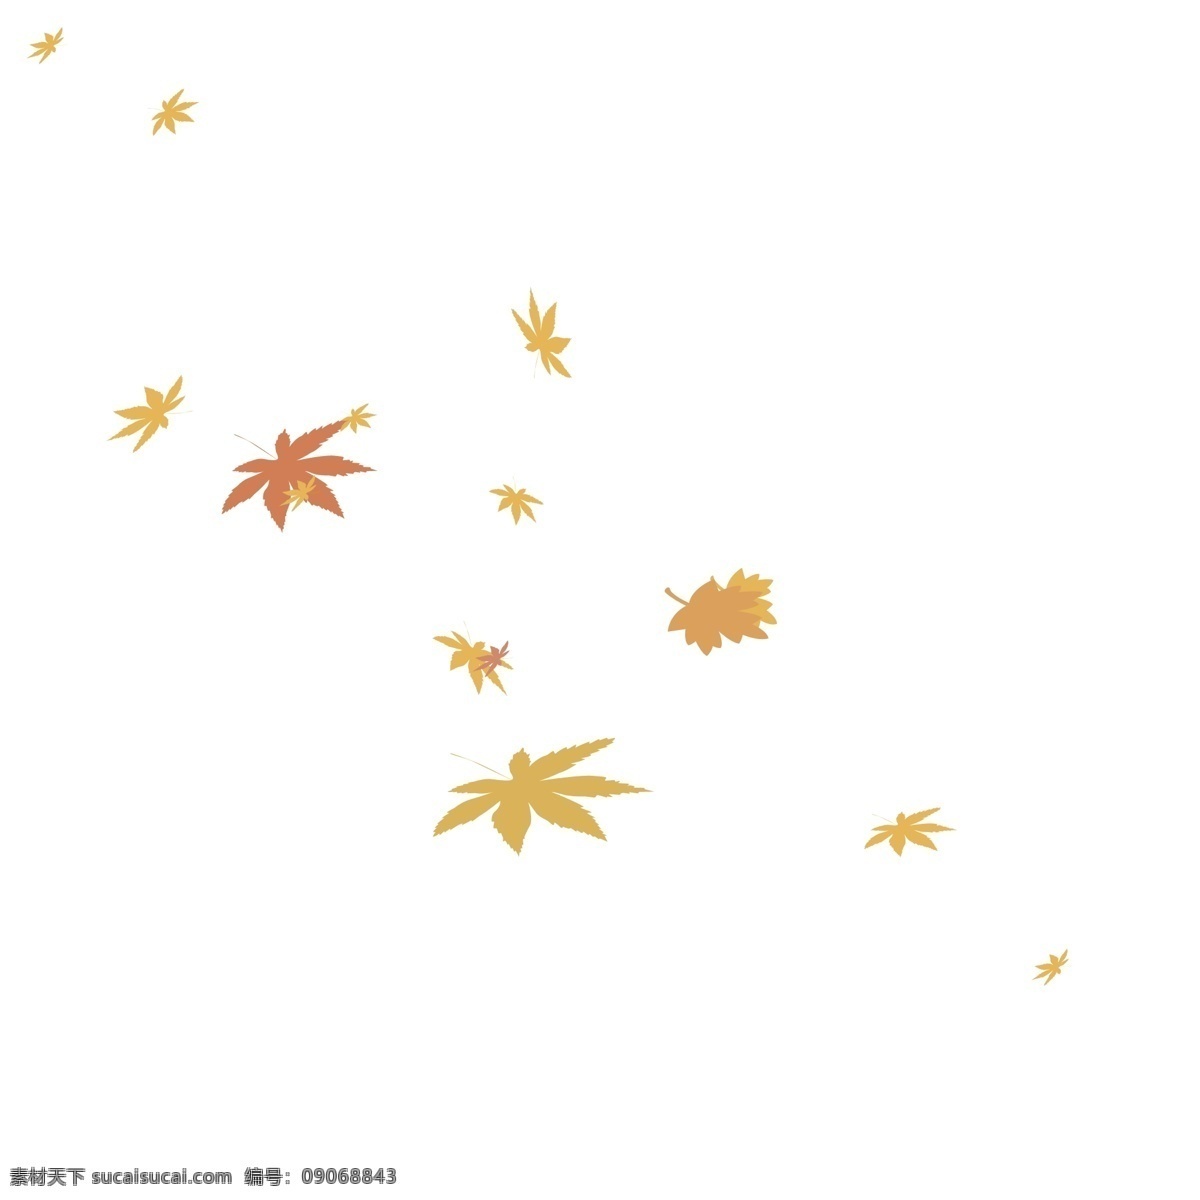 秋天 落叶 枫叶 黄色 简约 可爱 淘宝 天猫 京东 海报 喷绘 图案 黄昏 卡通